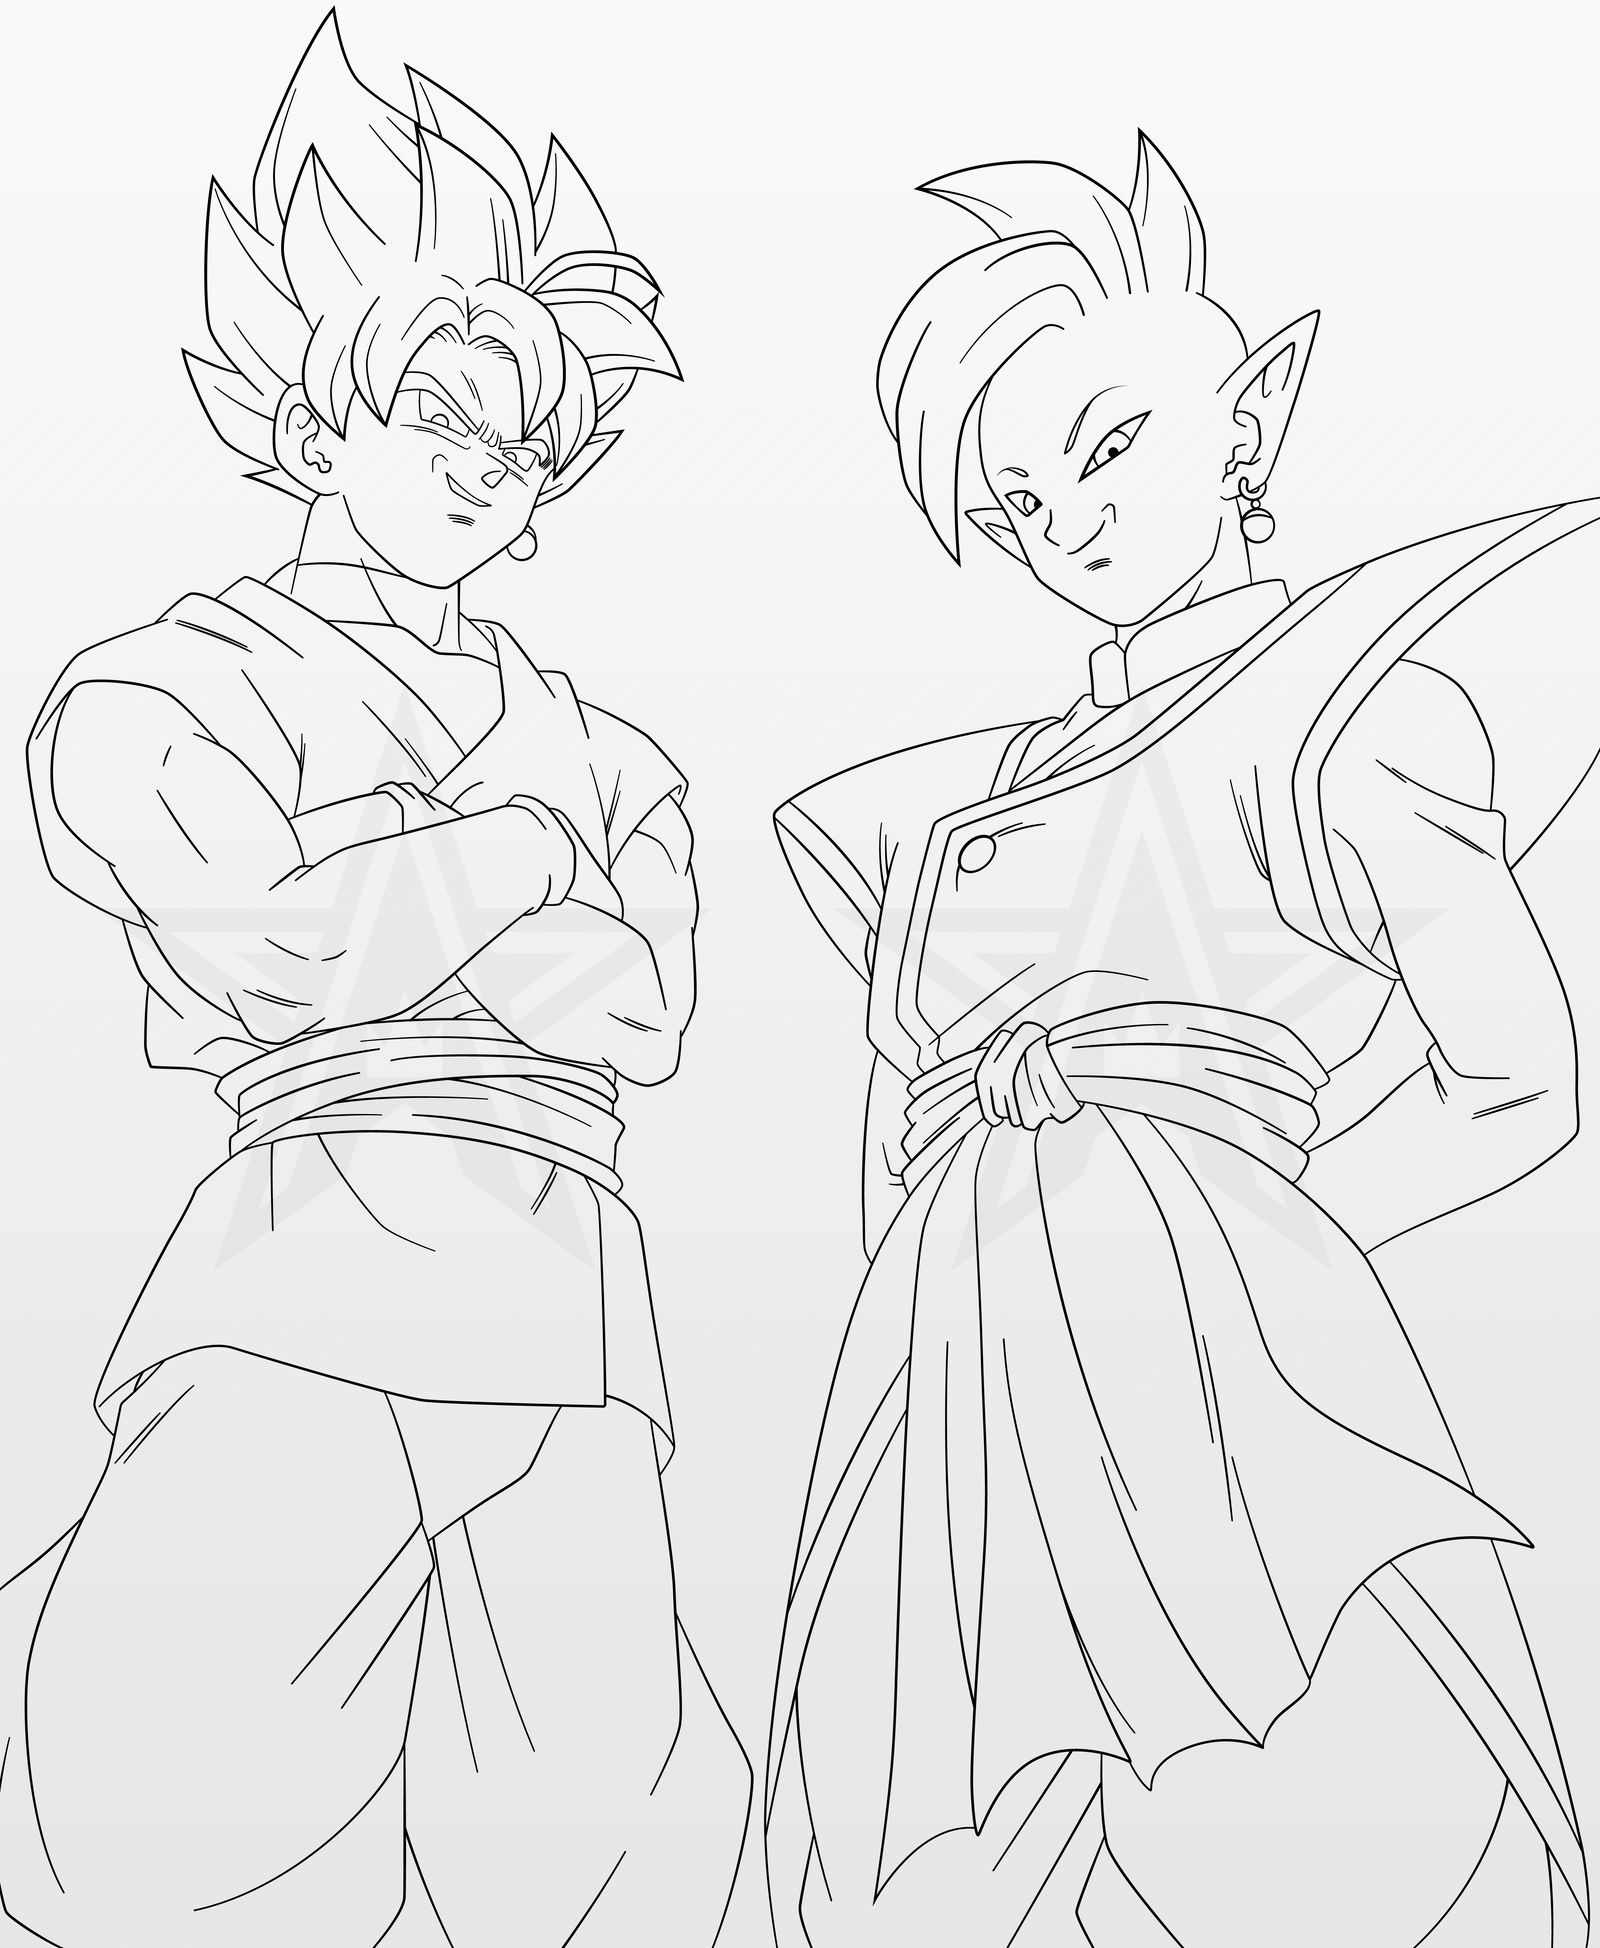 Desenho passo a passo do Goku Black e Zamasu